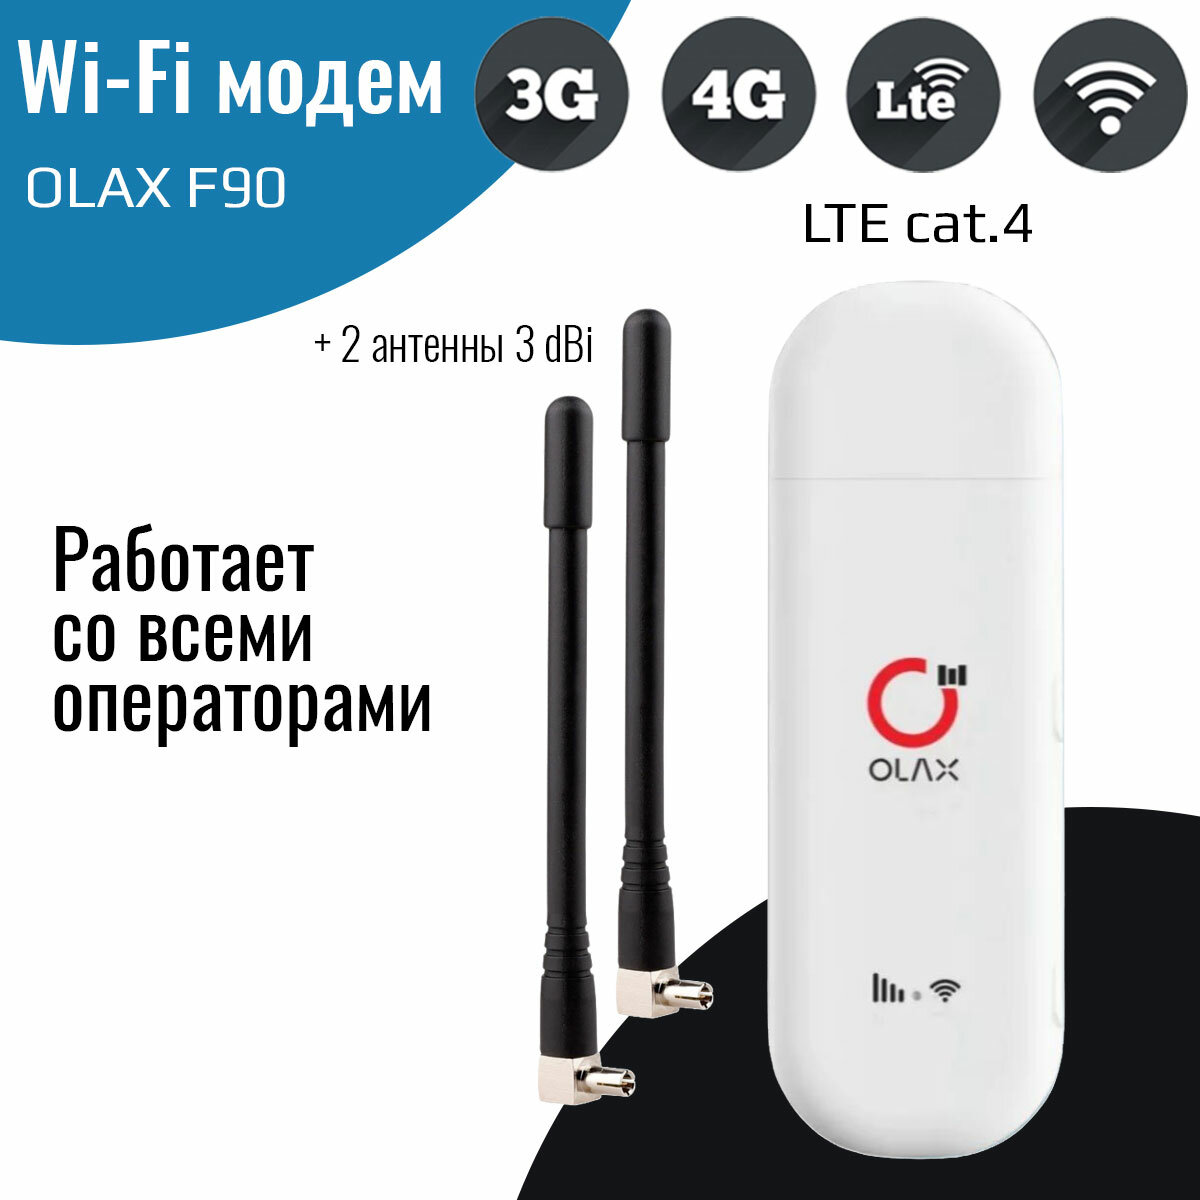 Модем 3G/4G OLAX F90 с Wi-Fi и двумя антеннами 3 dBi